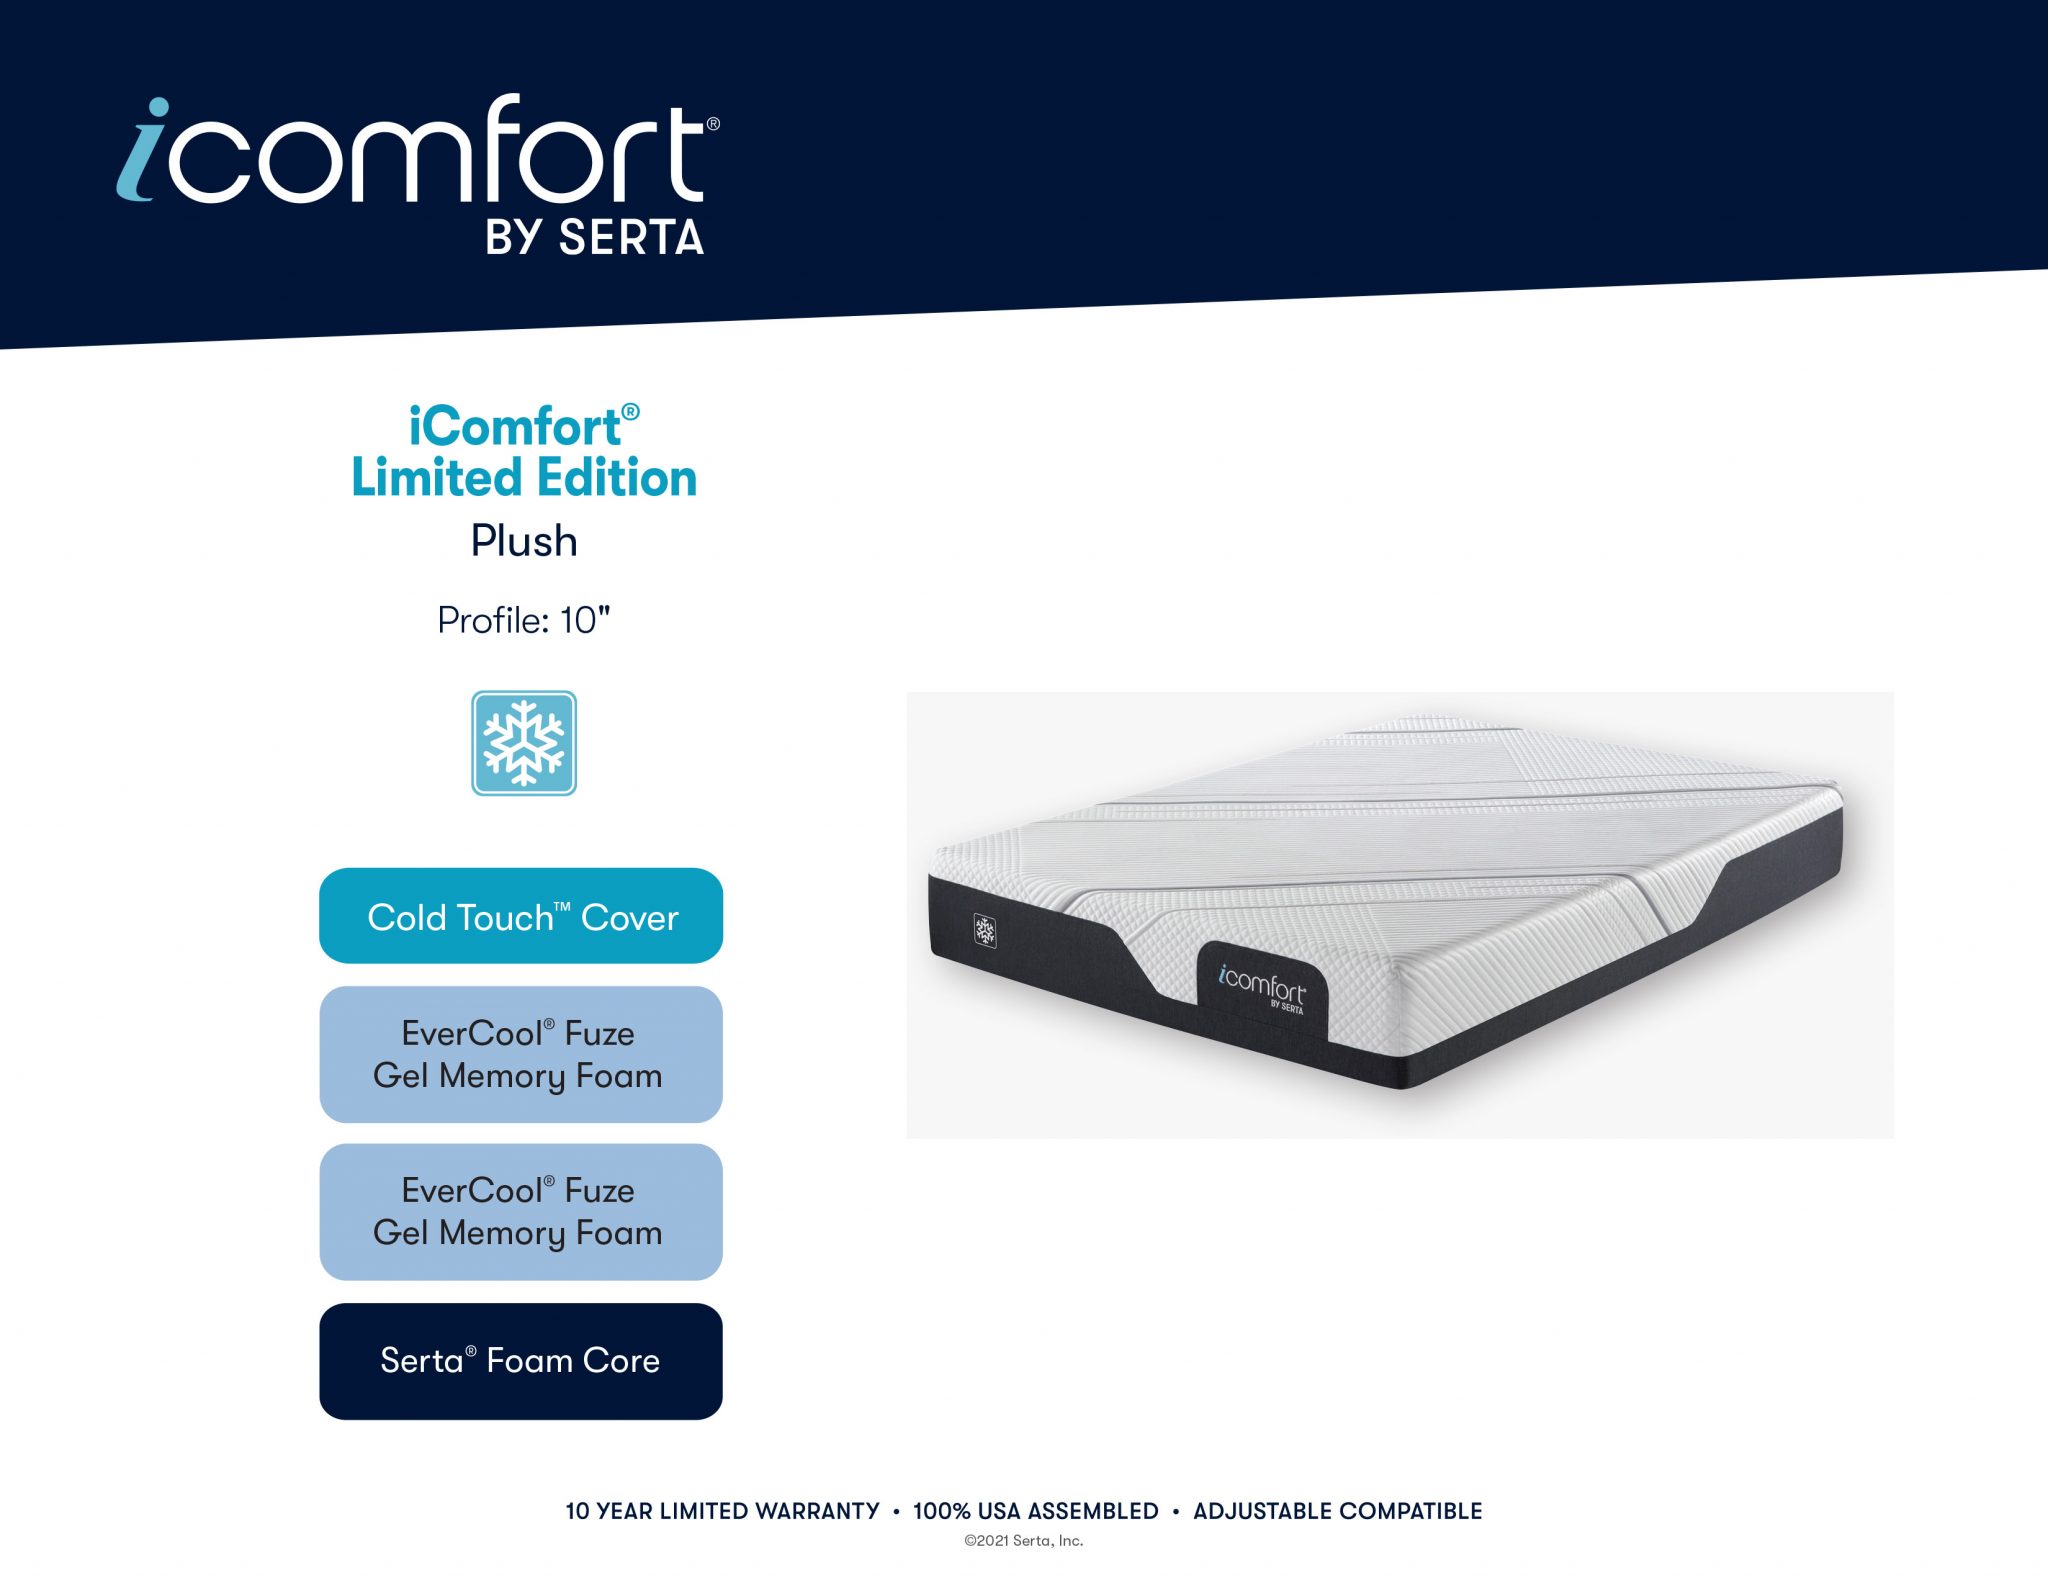 serta icomfort mattress cover